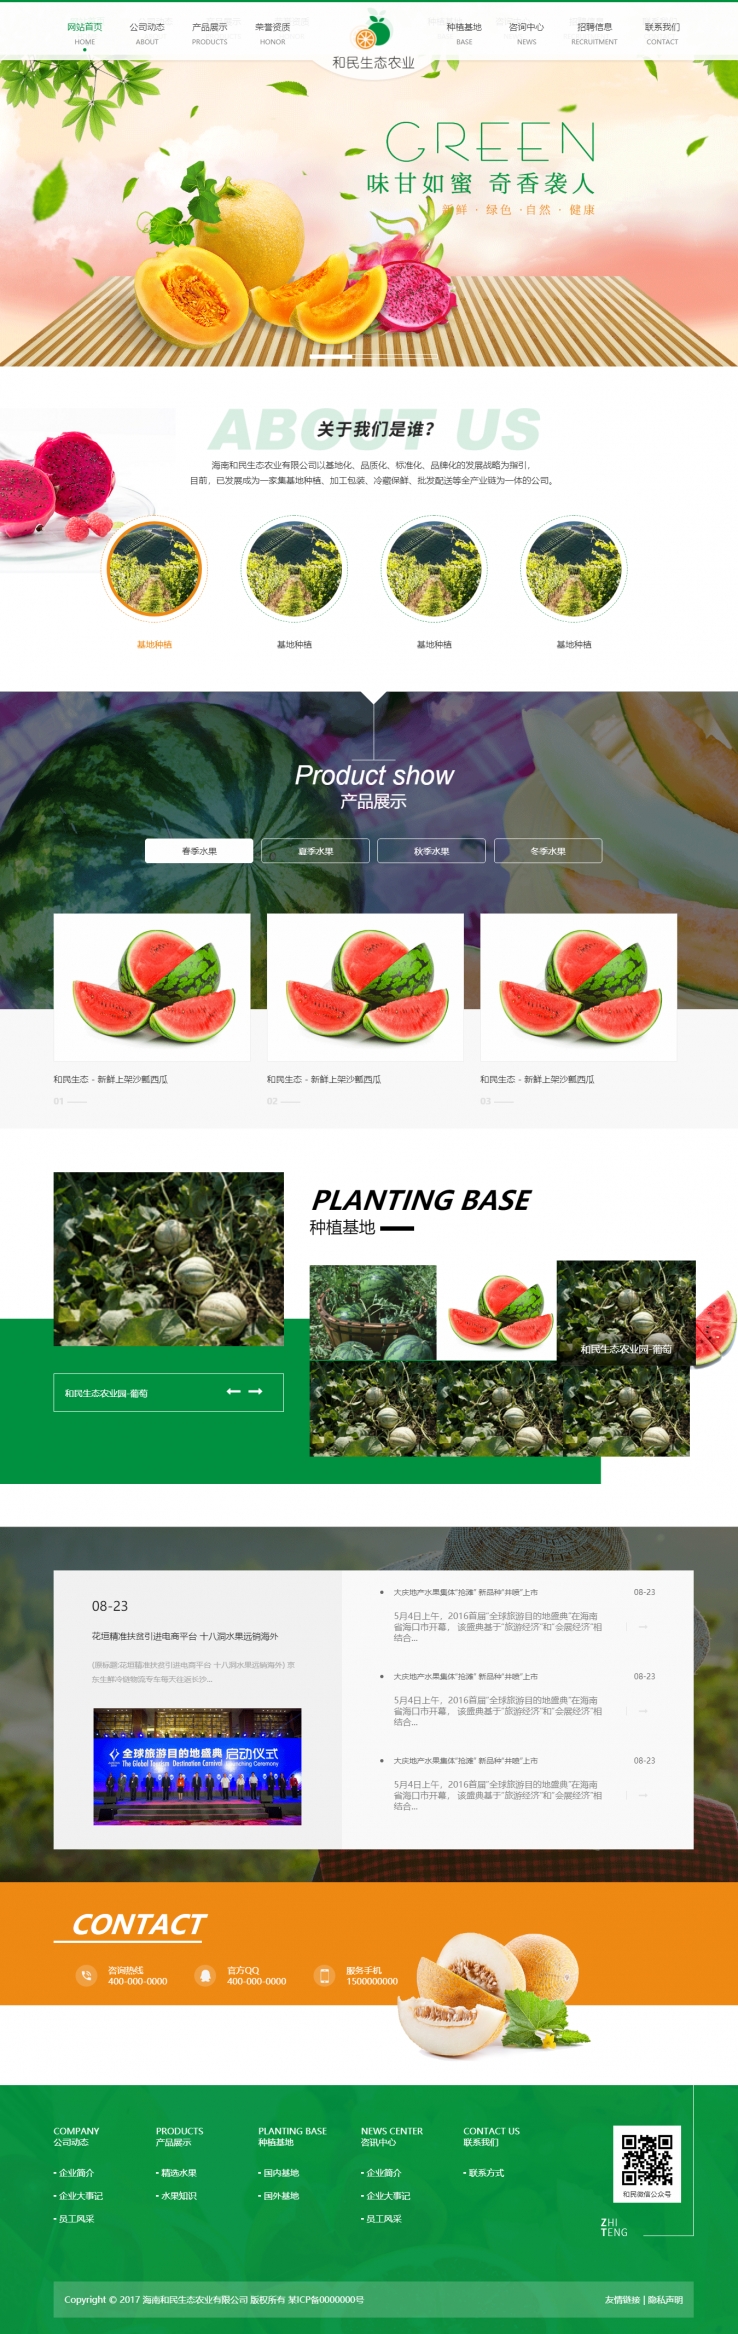 绿色清新风格的生态农业水果企业网站源码下载